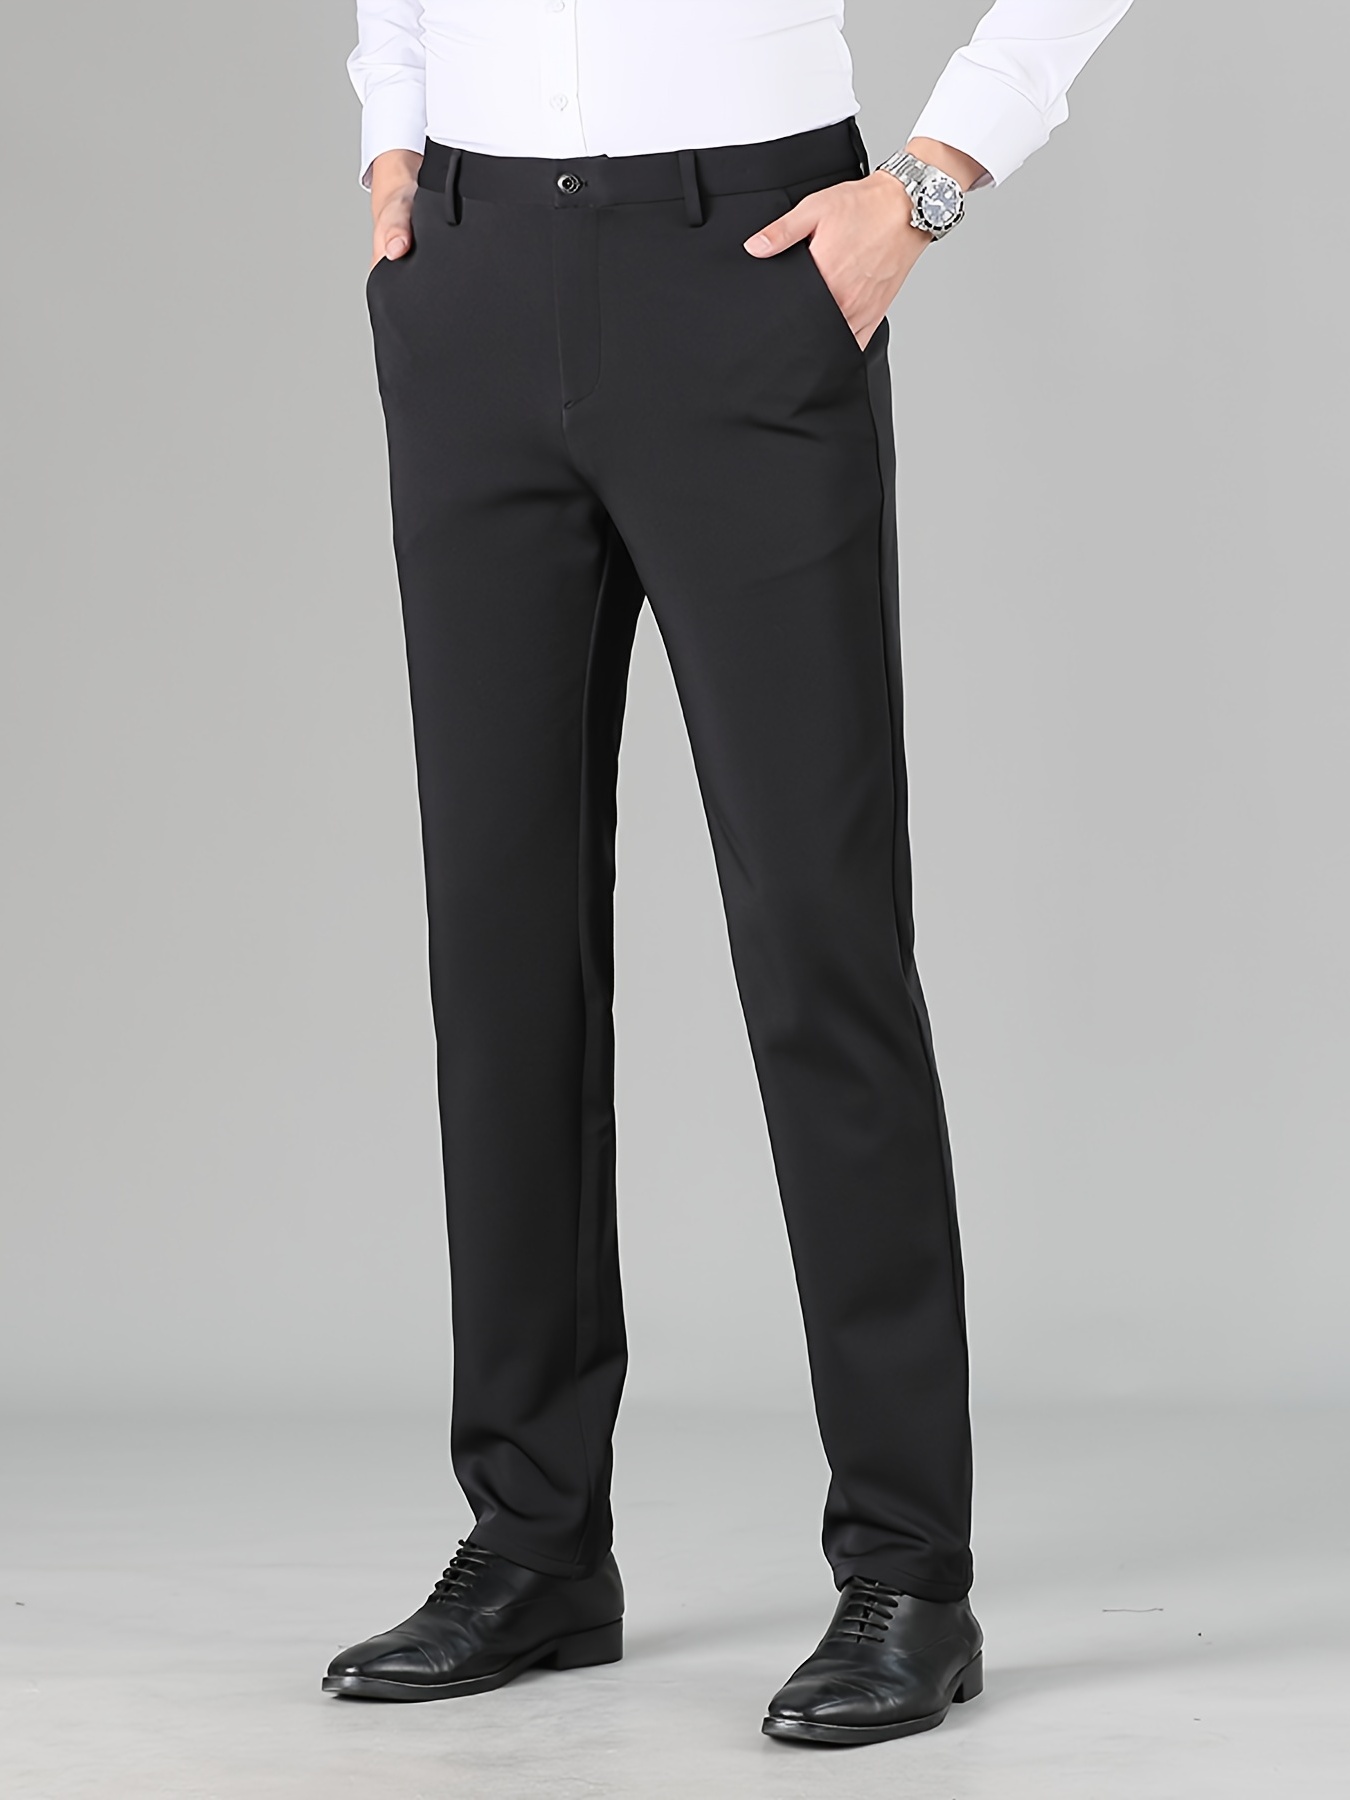 Mens Black Suit Pants, Shop The Latest Trends